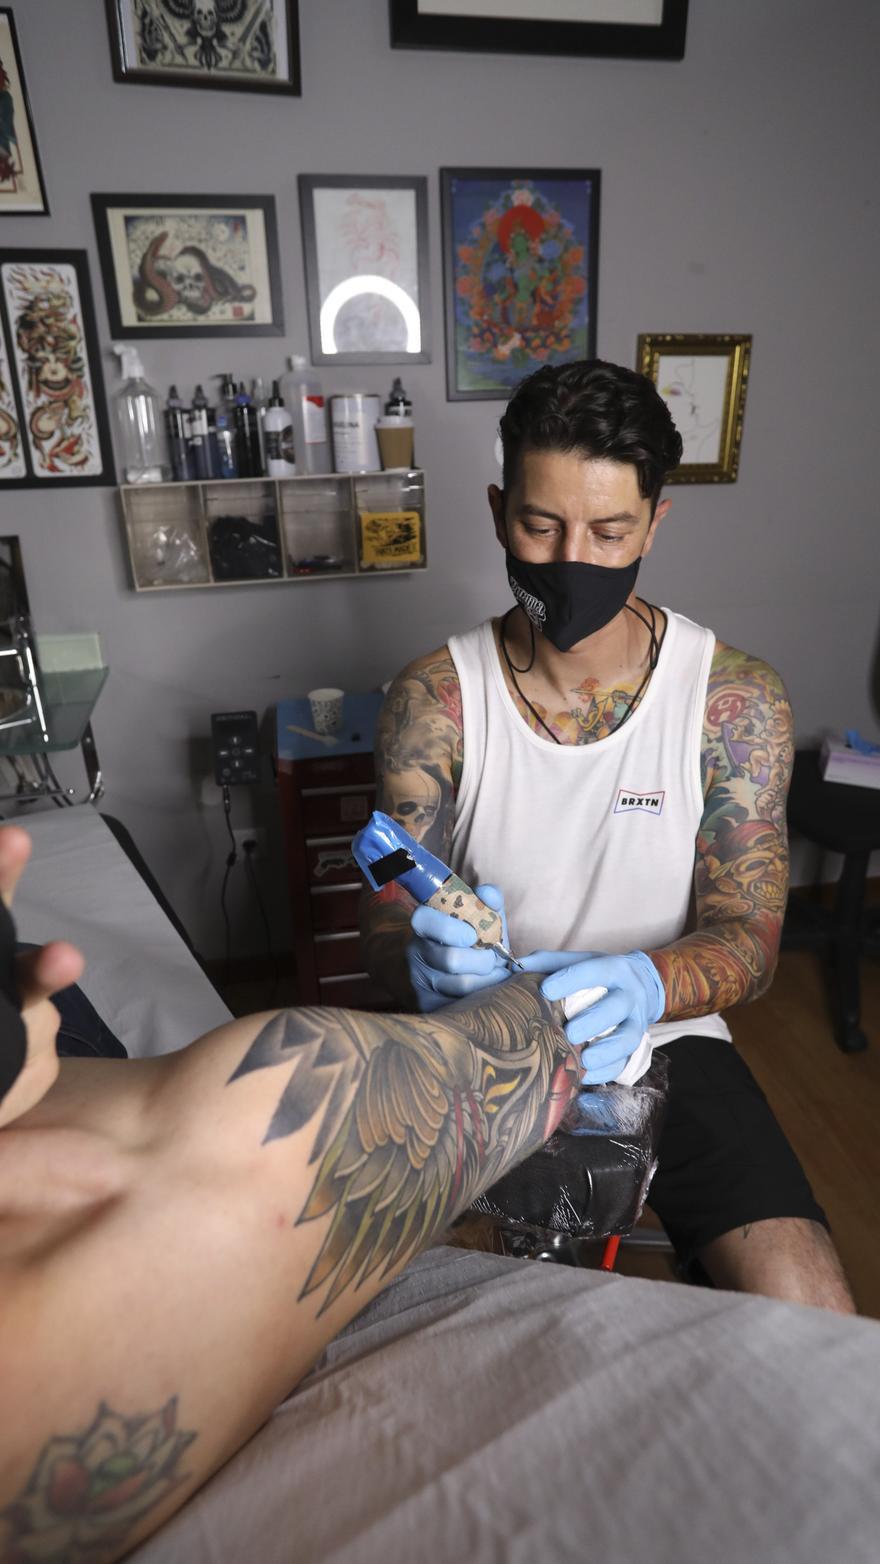 "Resiliencia": el mensaje que llega a los tatuajes tras la pandemia